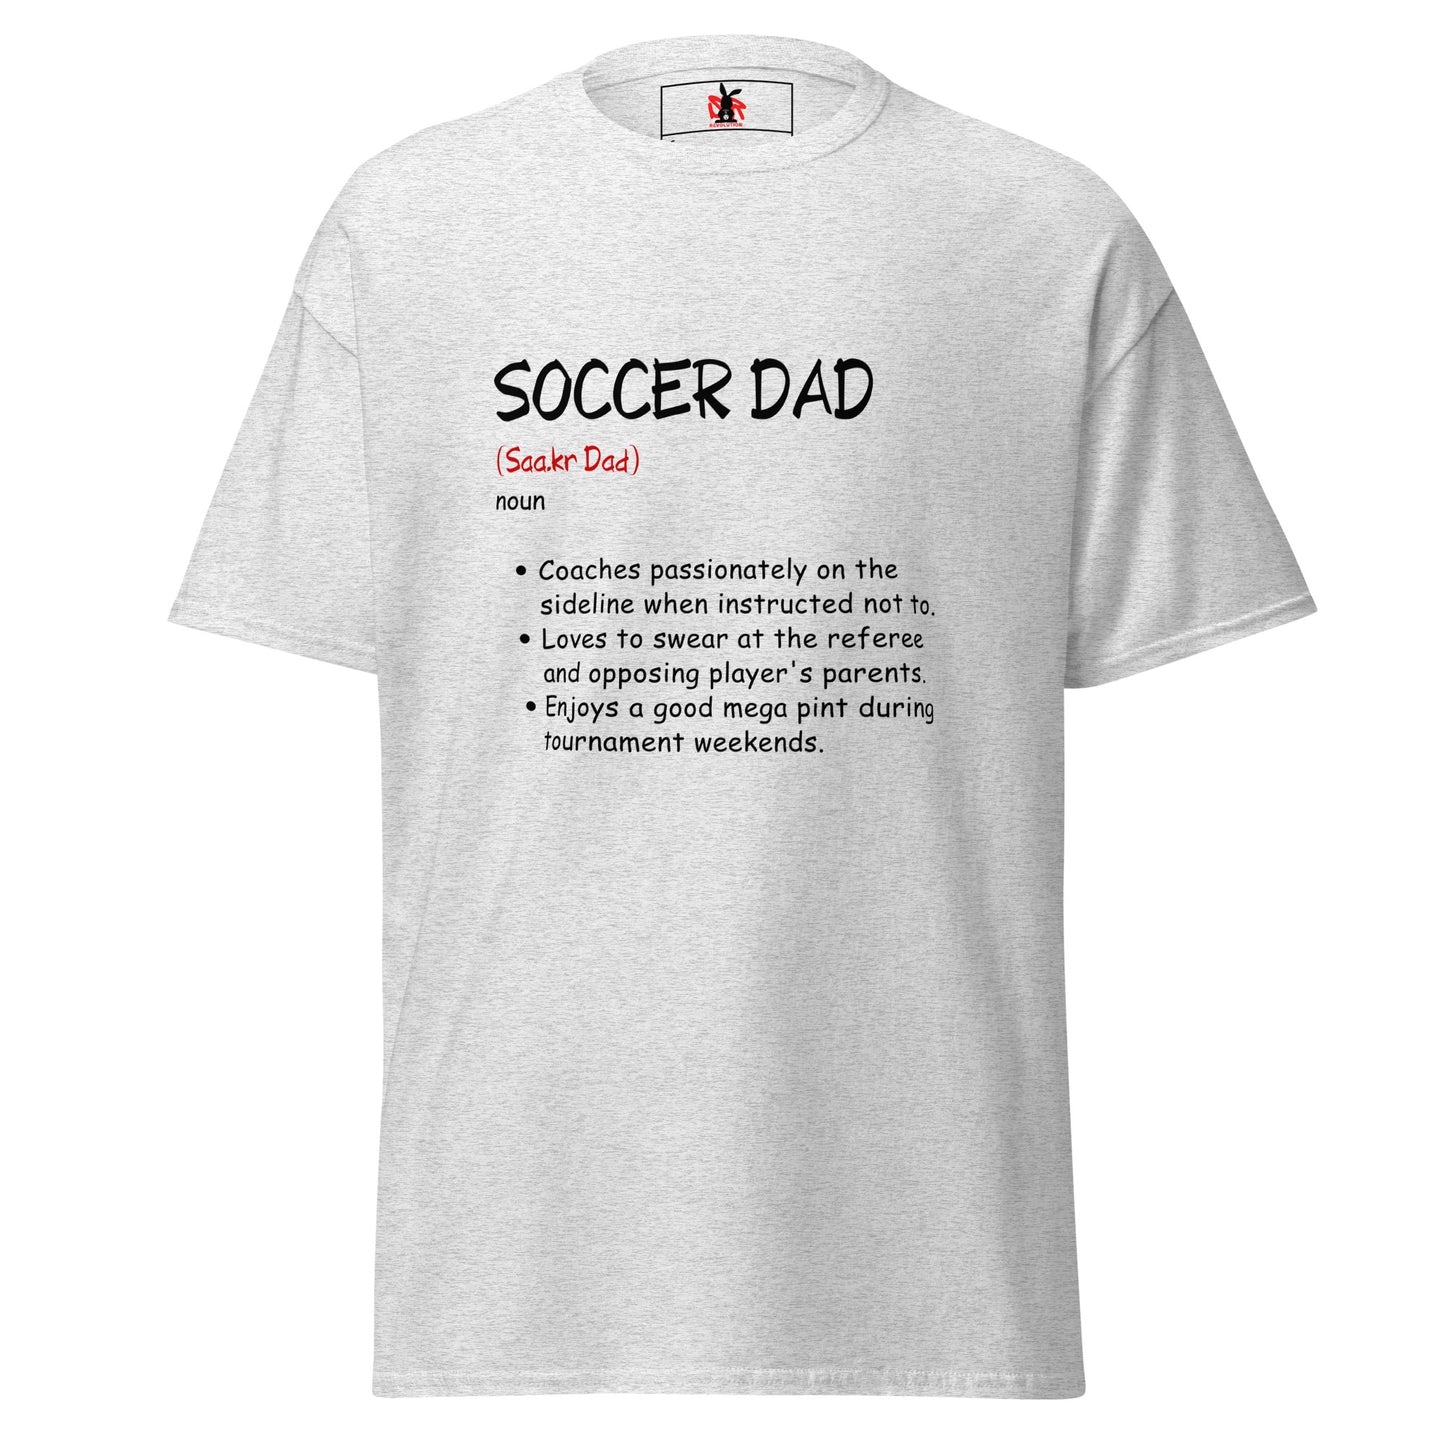 Soccer Dad (noun)